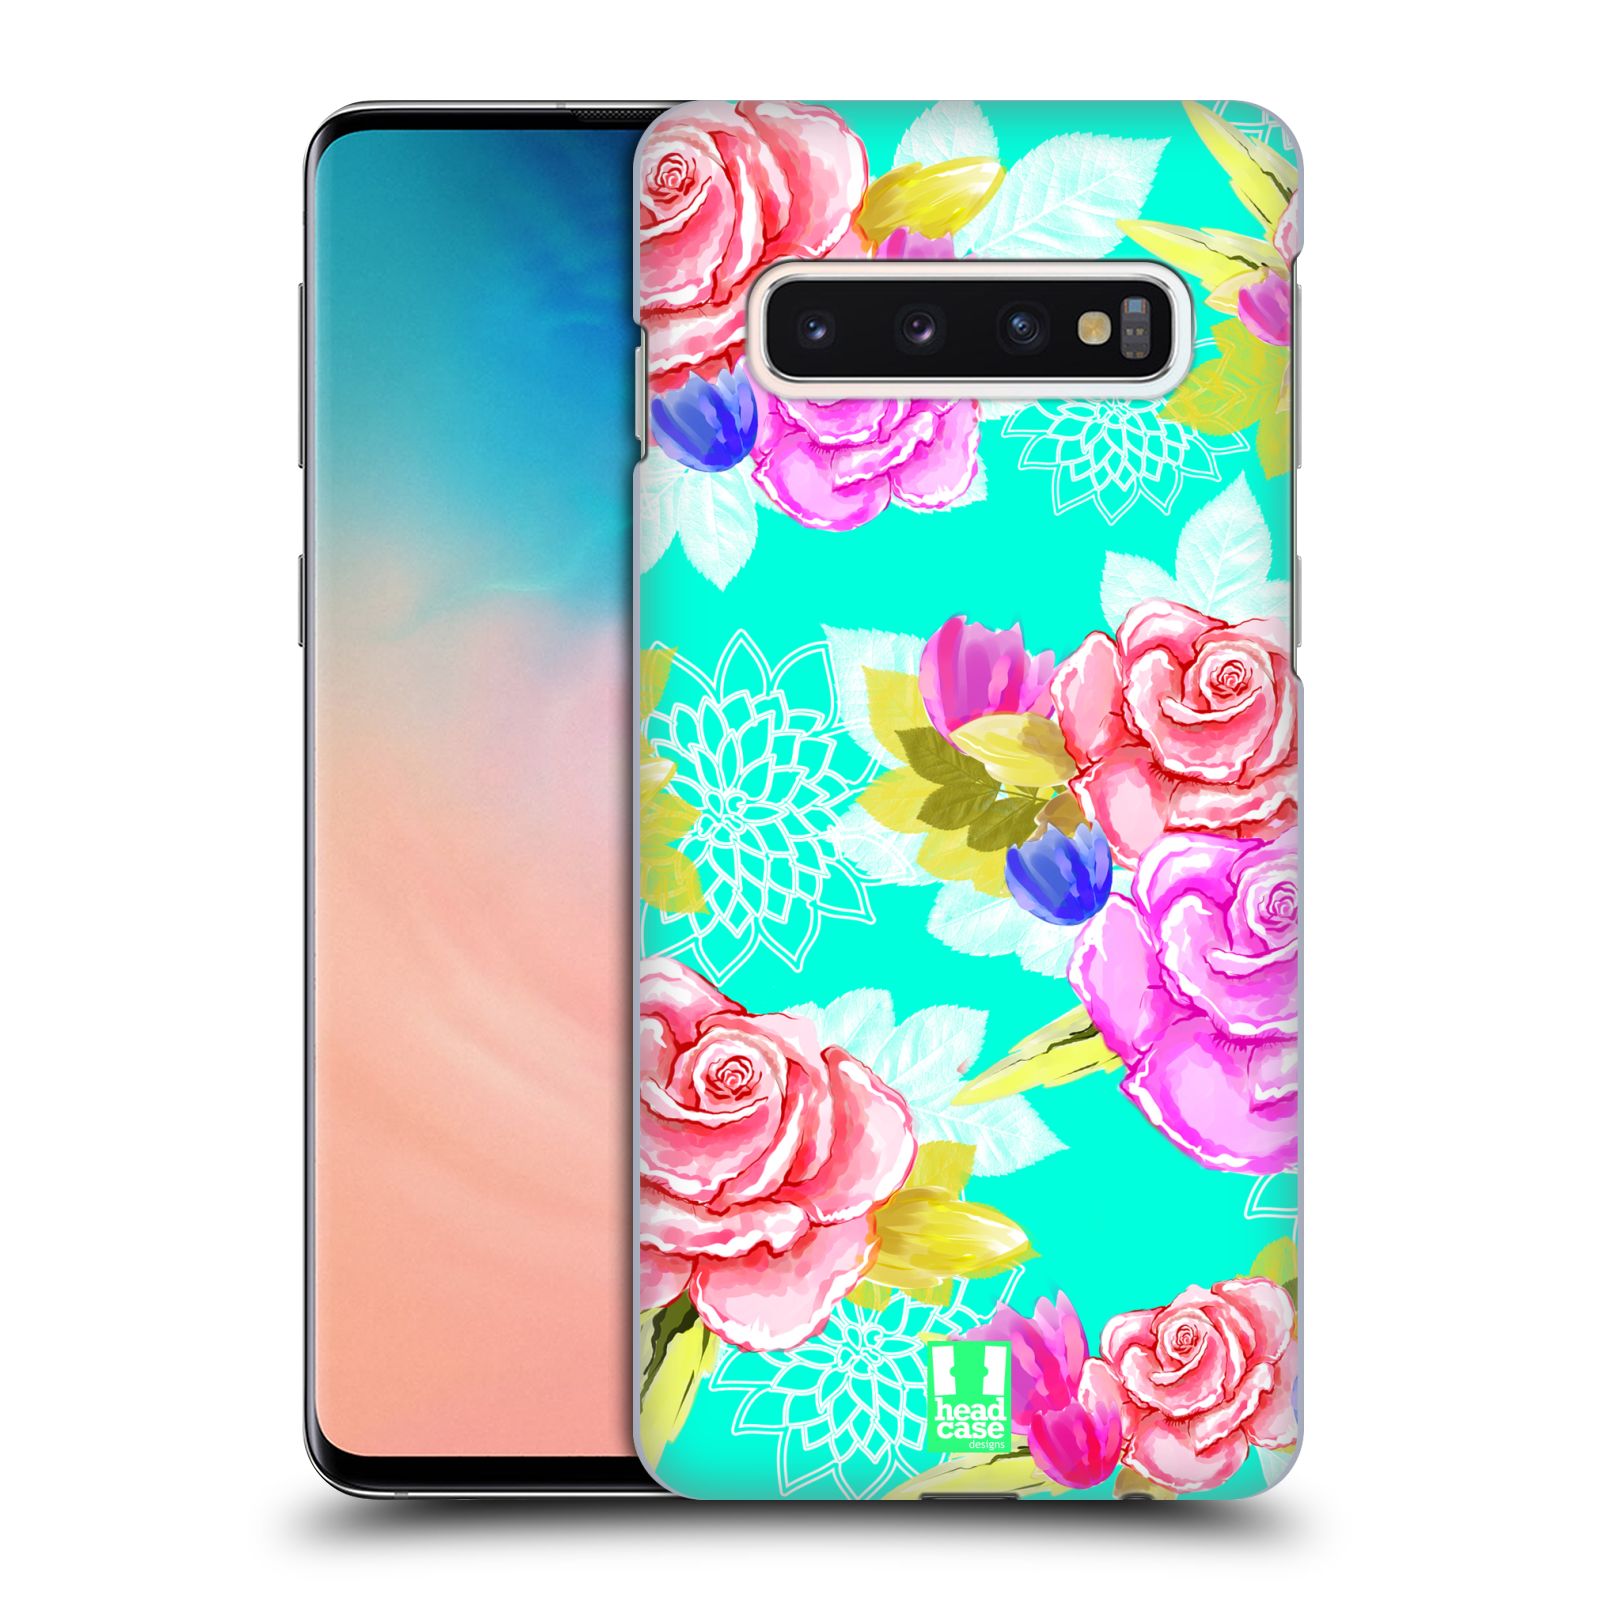 Pouzdro na mobil Samsung Galaxy S10 - HEAD CASE - vzor Malované květiny barevné AQUA MODRÁ